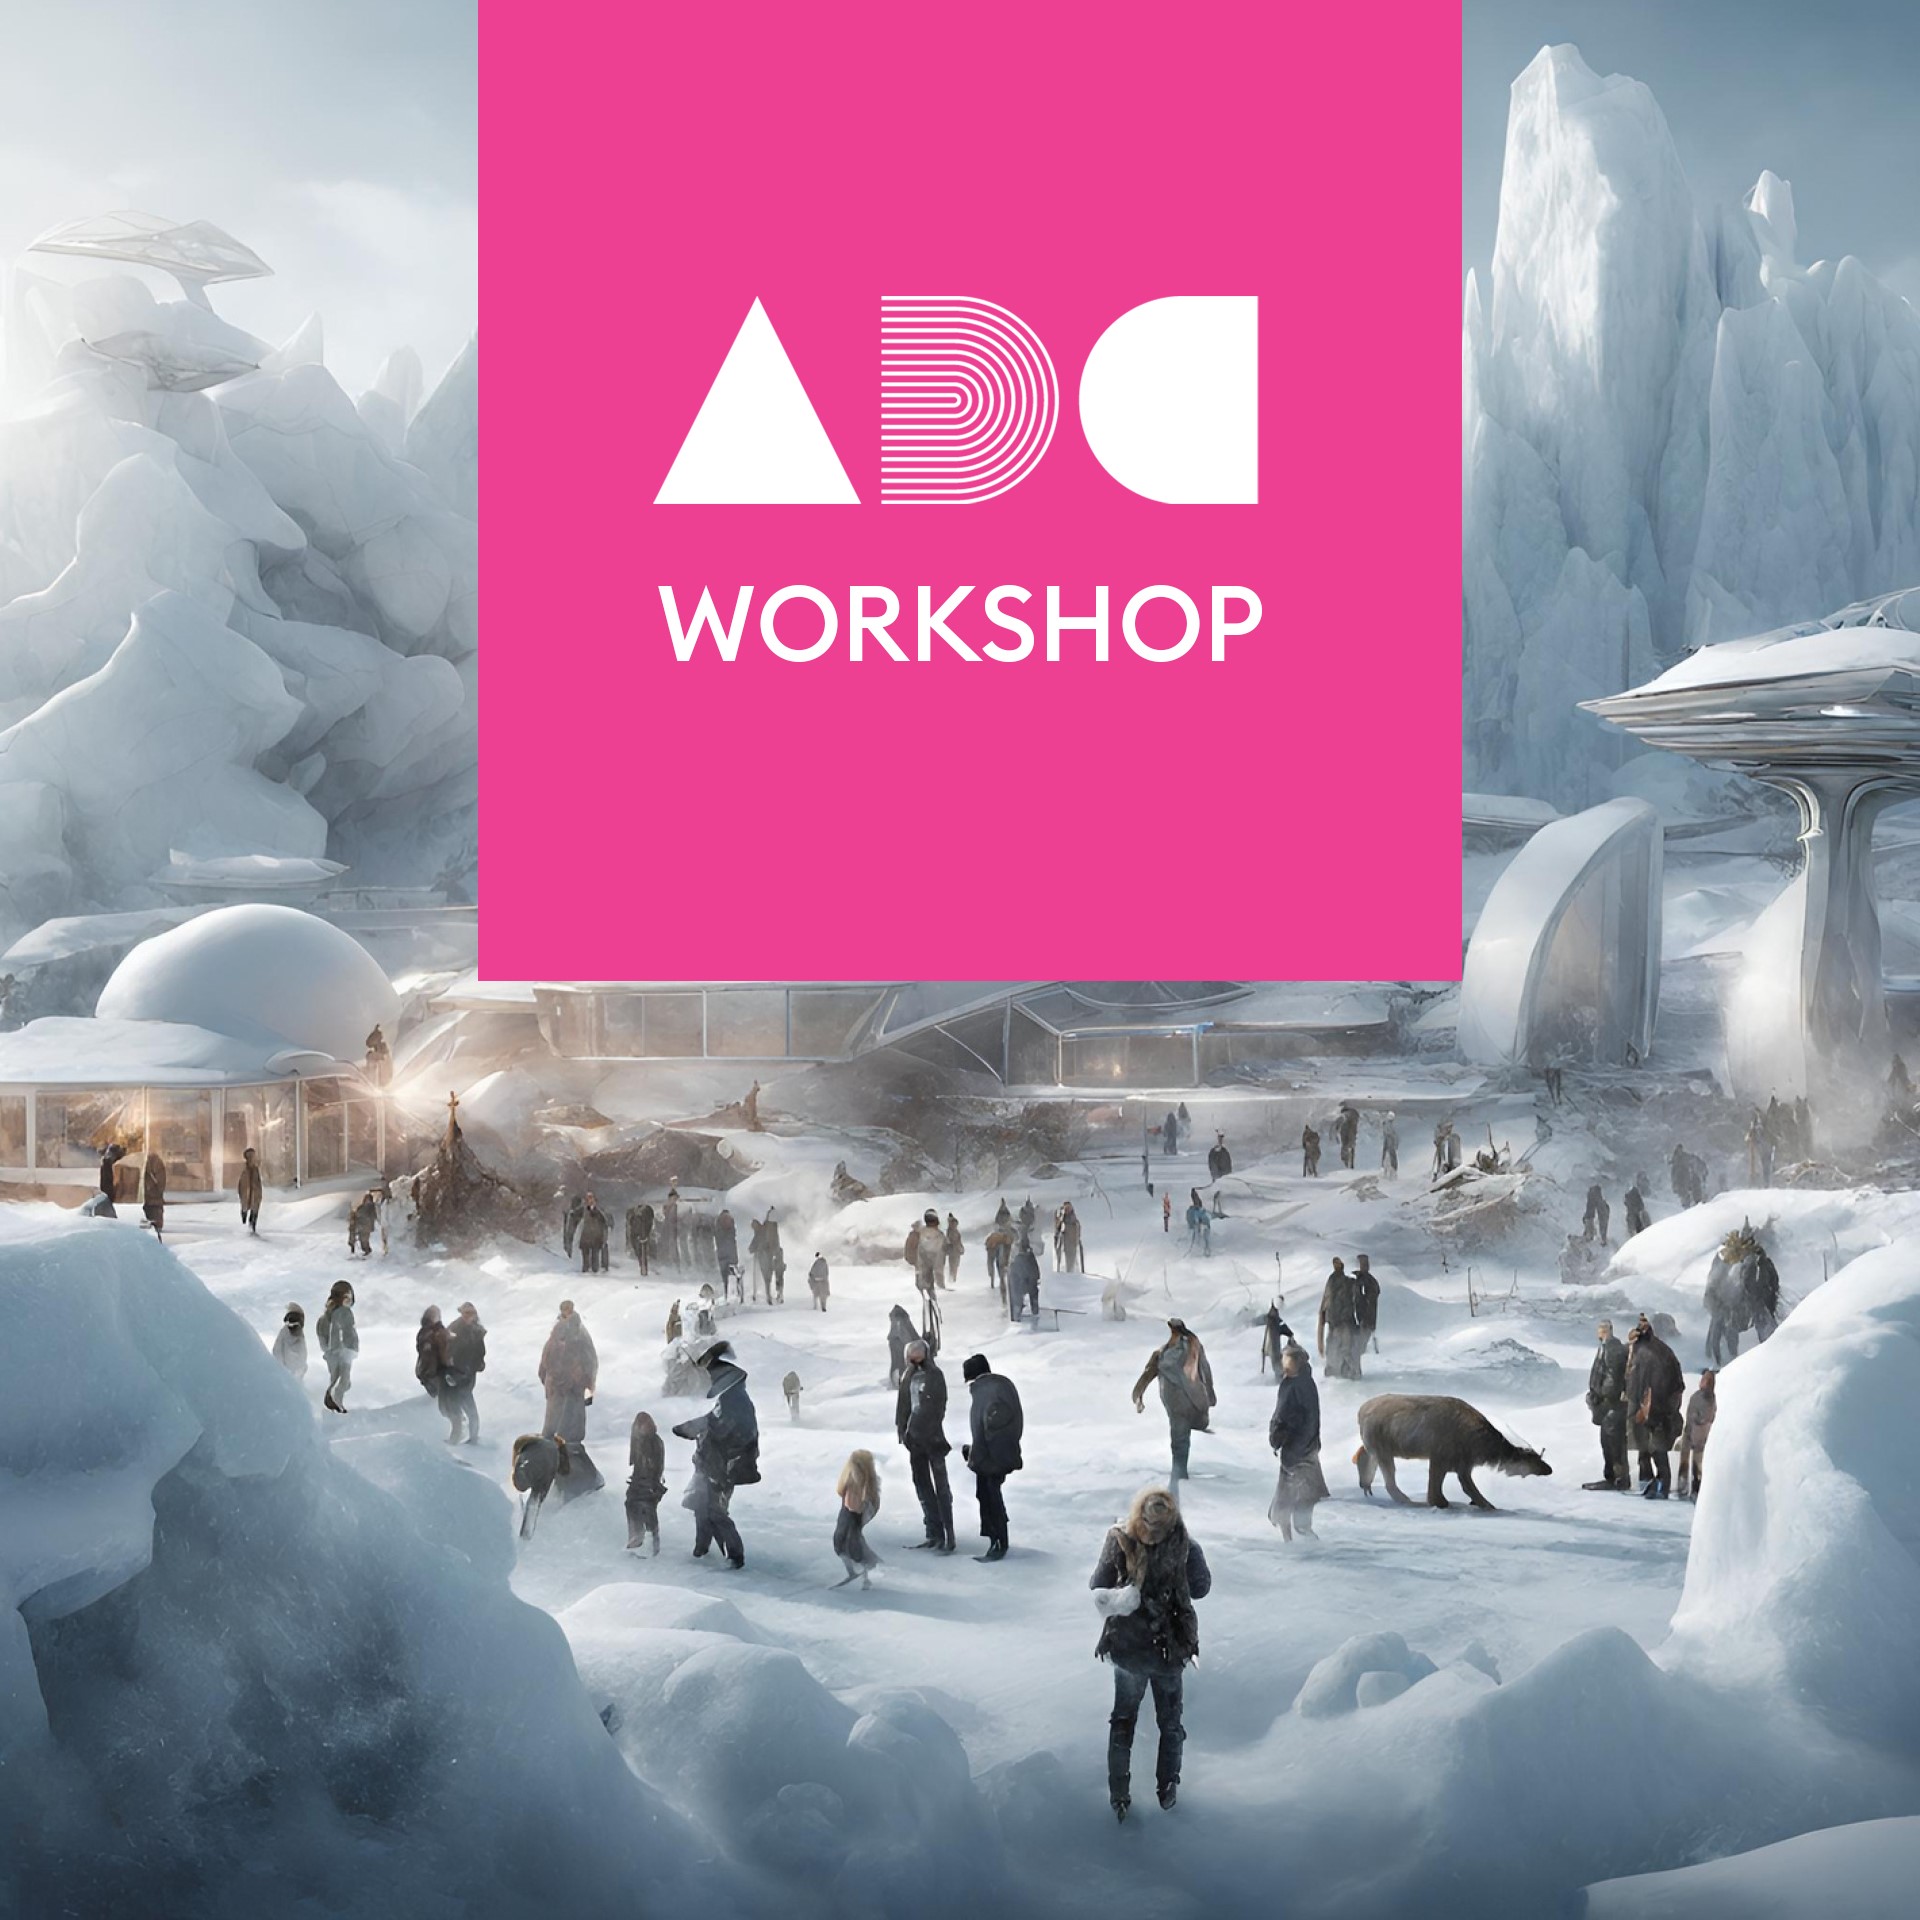 ADC (Arctic Design Center) workshop